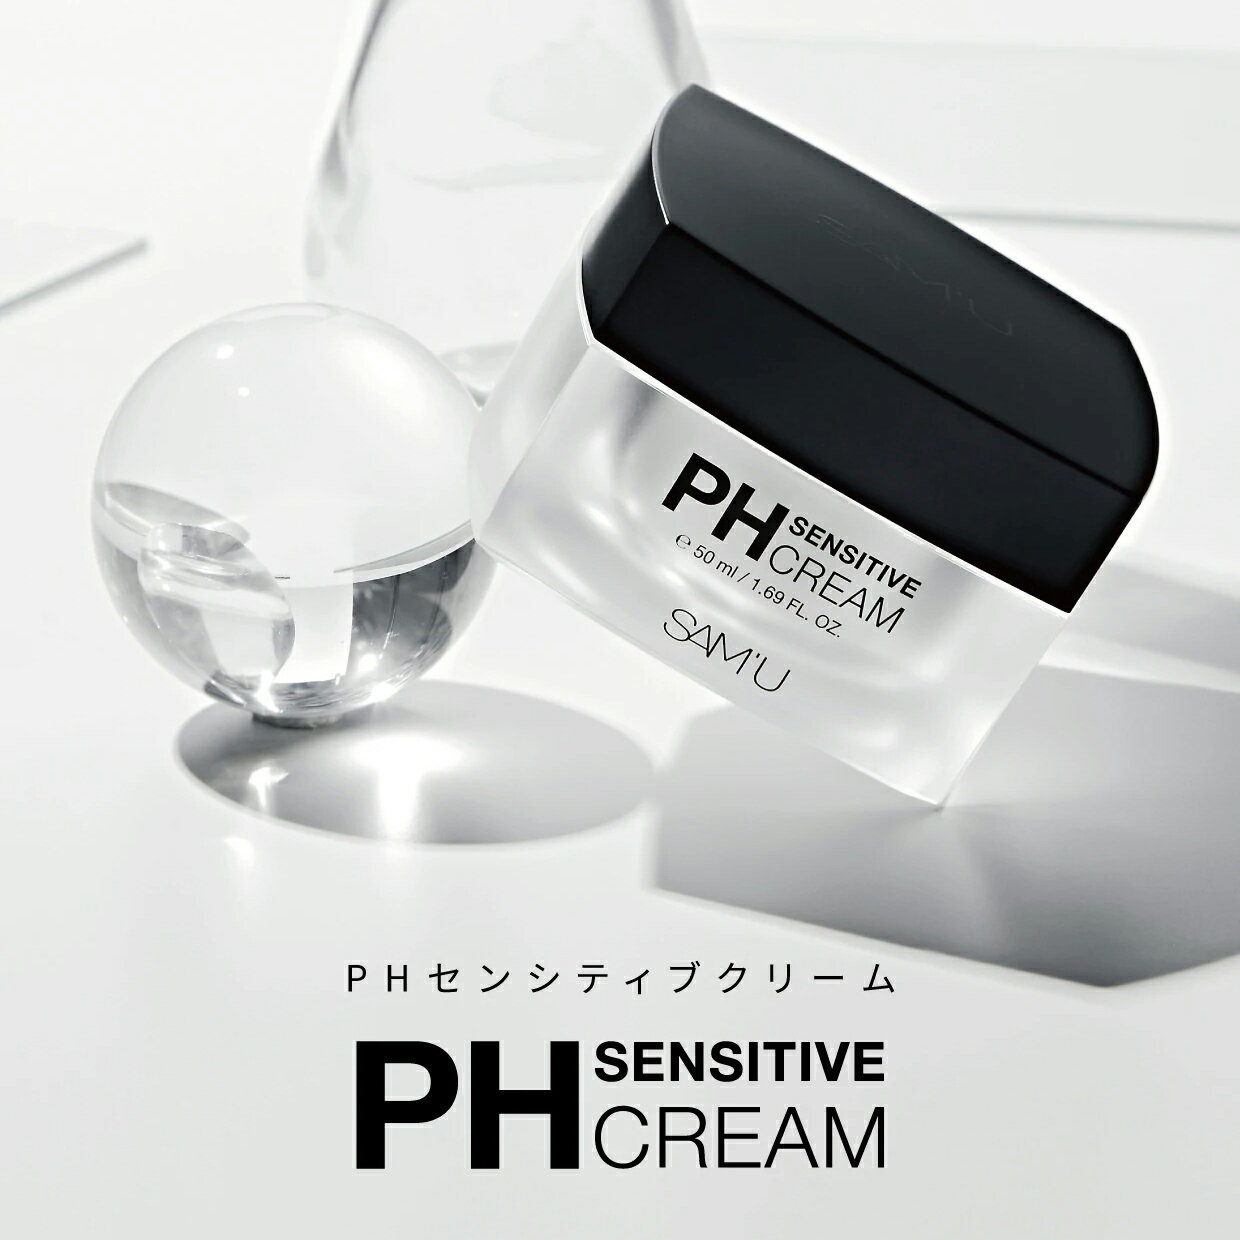 SAMU （サミュ）PH Sensitive Cream サミュPHセンシティブクリーム 50ml 韓国コスメ 送料無料 phクリーム